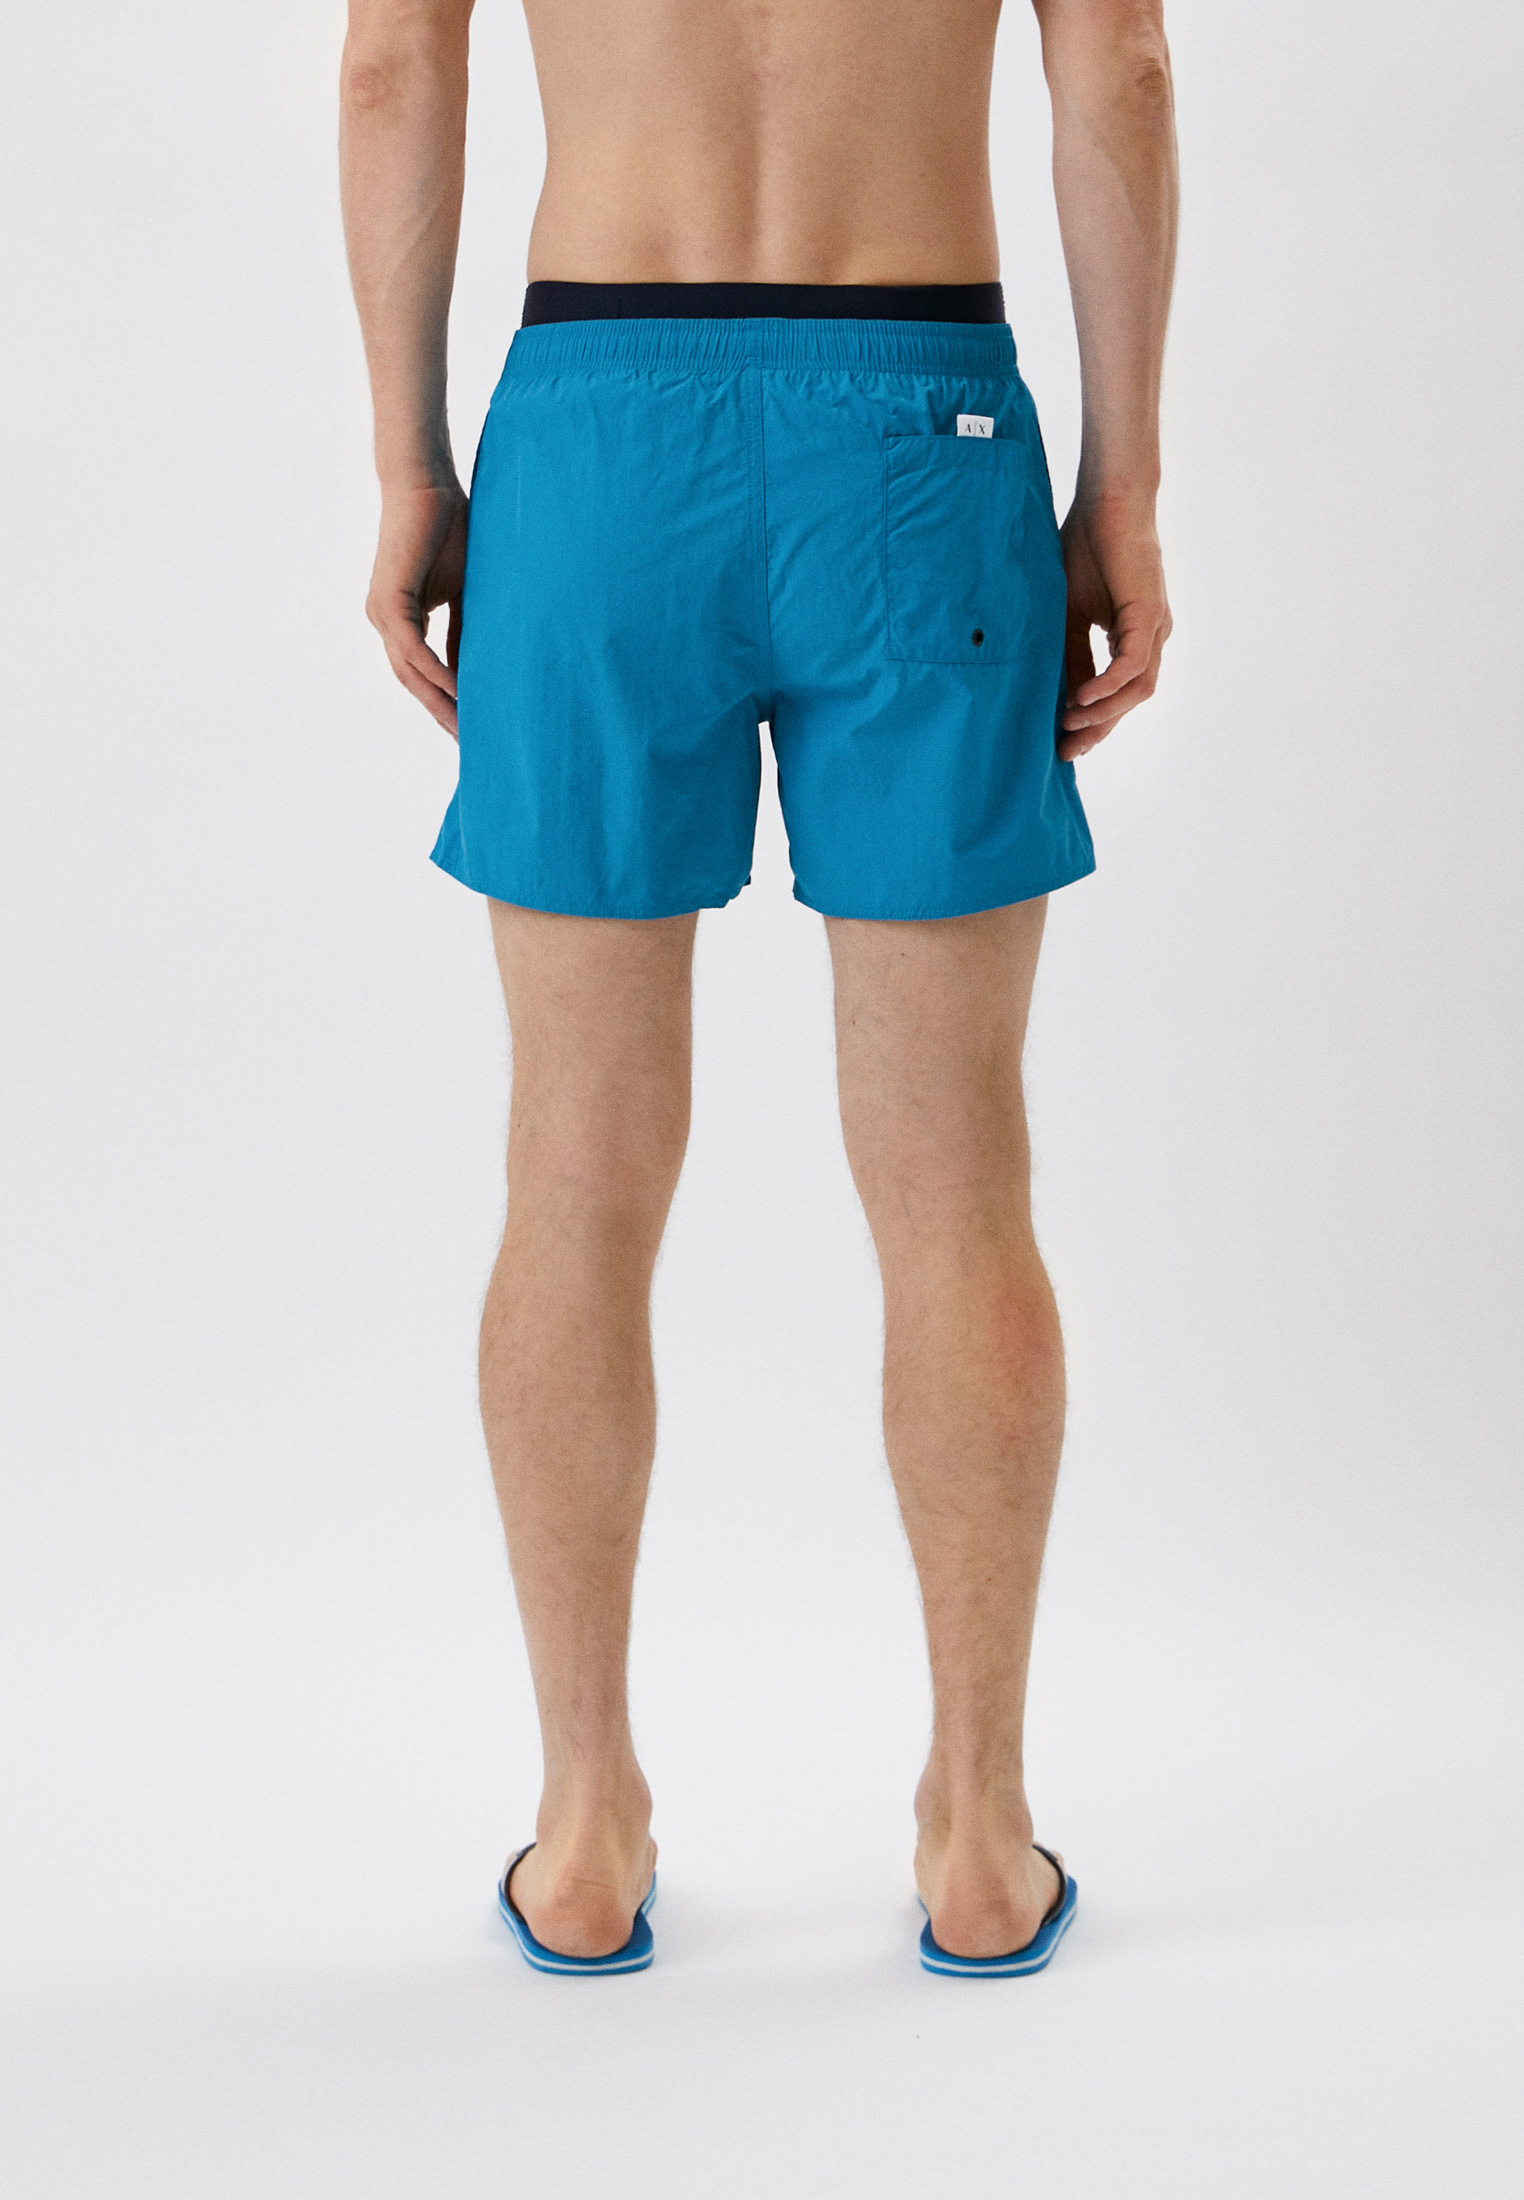 Мужские шорты для плавания Armani Exchange 953020 2R610: изображение 2